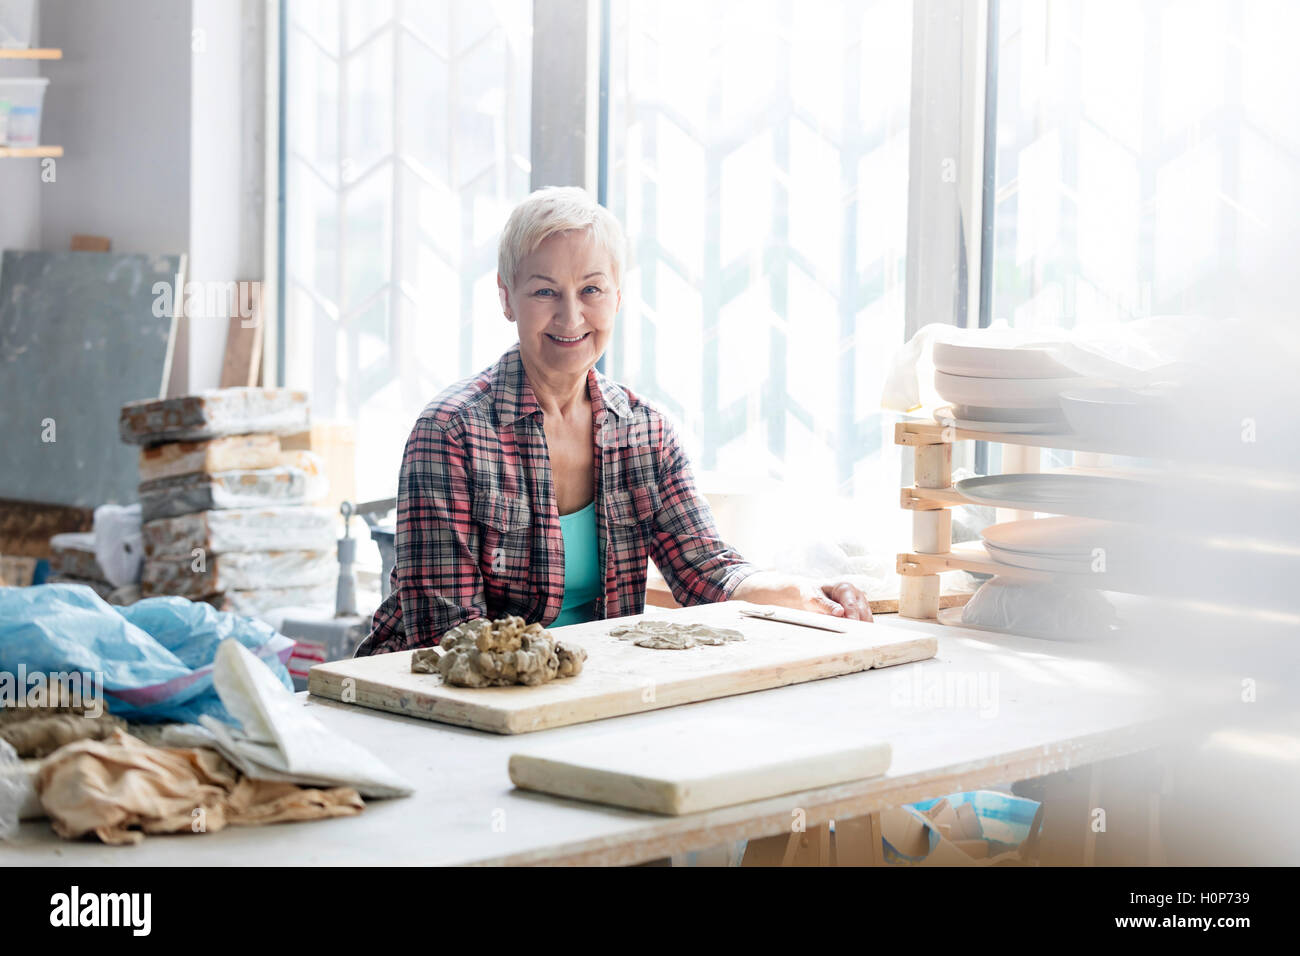 Porträt Frau arbeiten Ton Keramikatelier Stockfoto